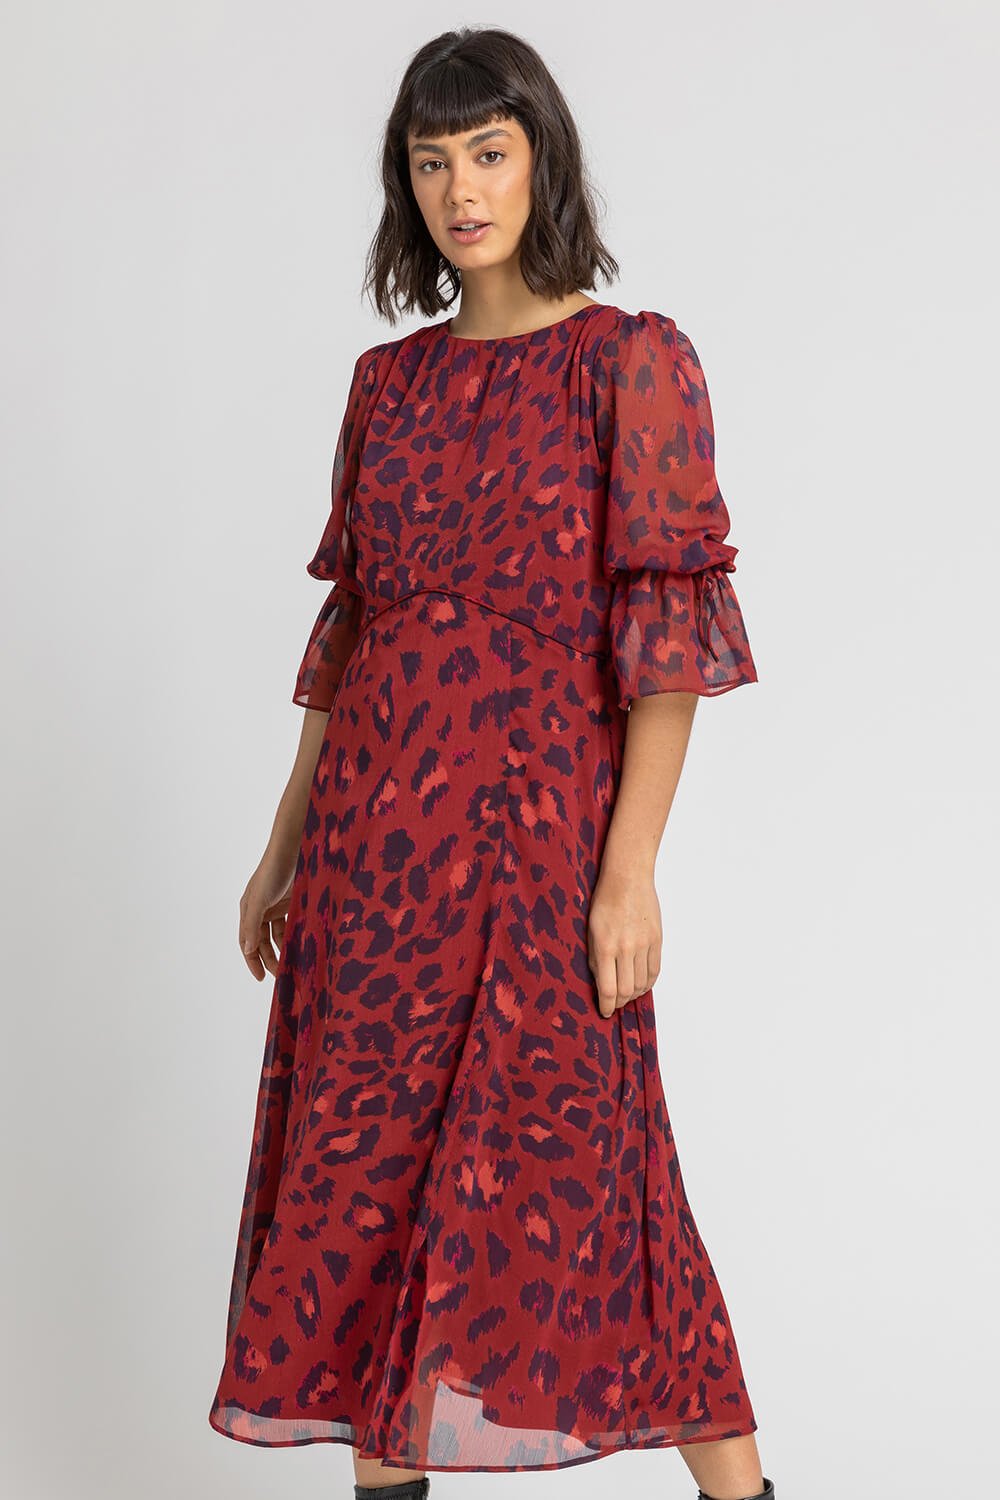 Leopard Print Chiffon Maxi Dress